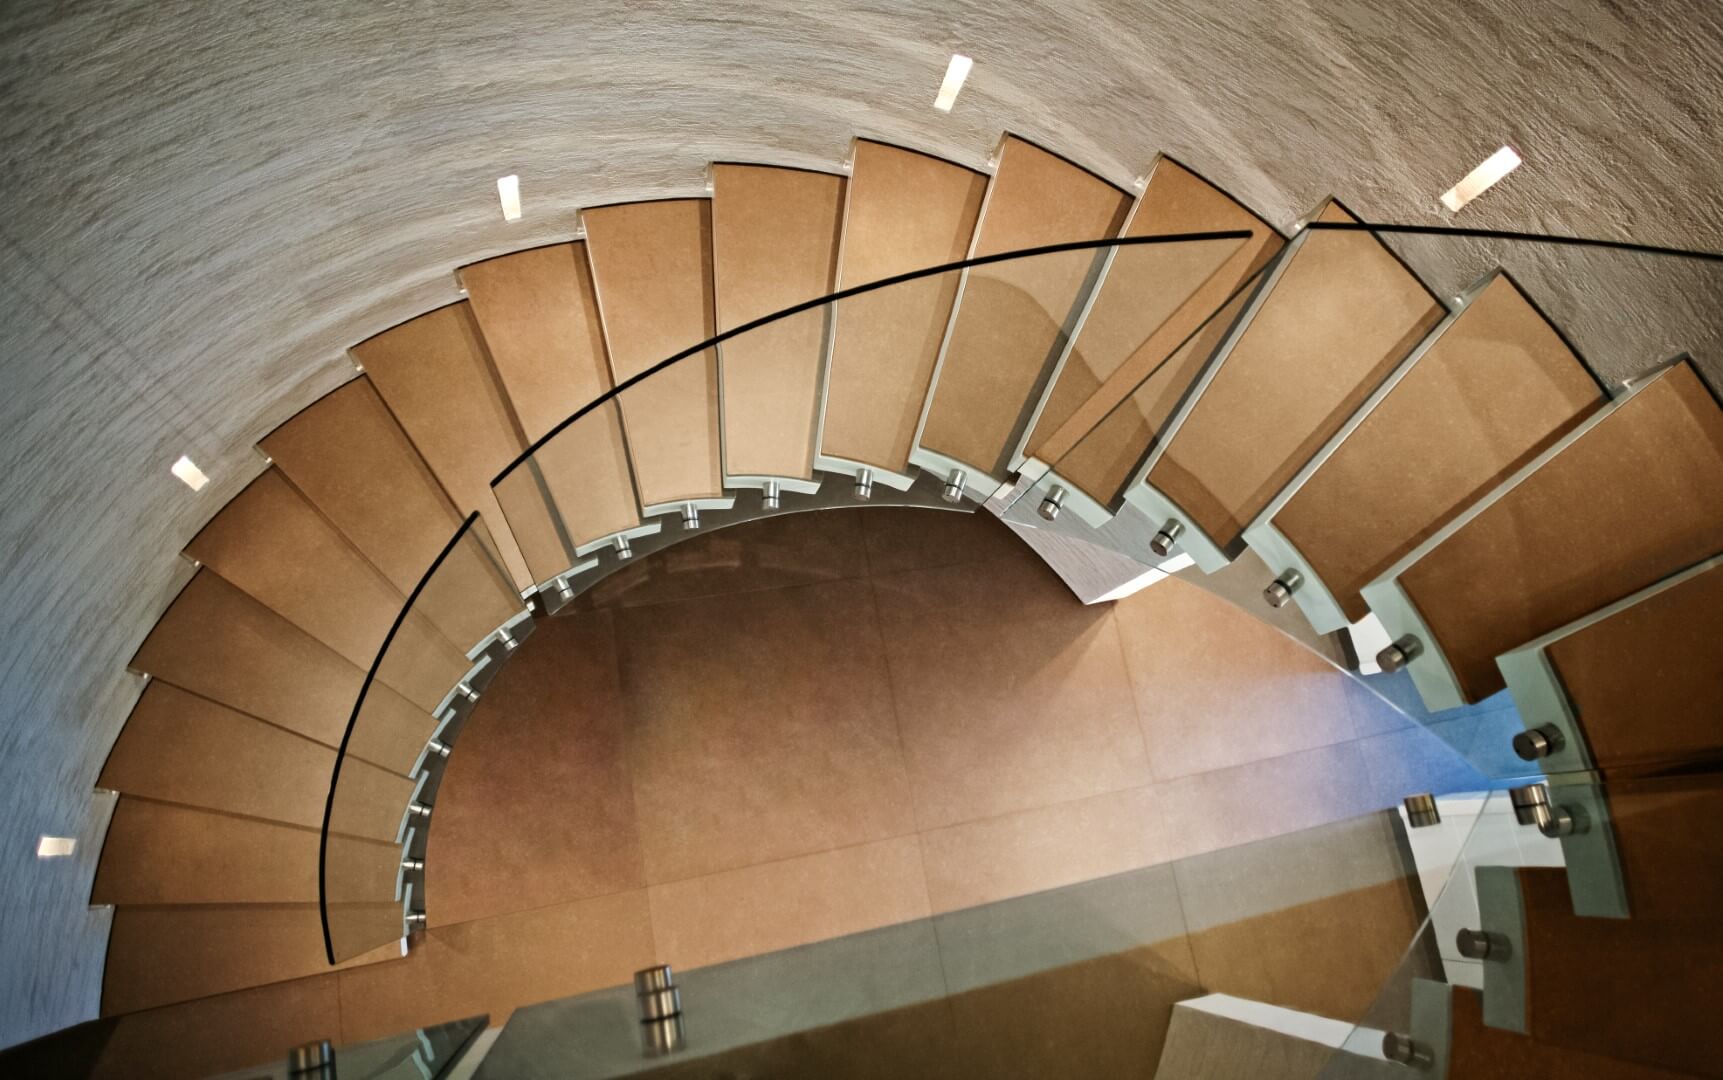 מבט מלמעלה על מדרגות לולייניות ספיראלה מקוריאן קופסא לבנה ומעל קוריאן בגוון שעורה ועץ סַנְדָל, ומעקה ספירלי מזכוכית אקסטרה קליר